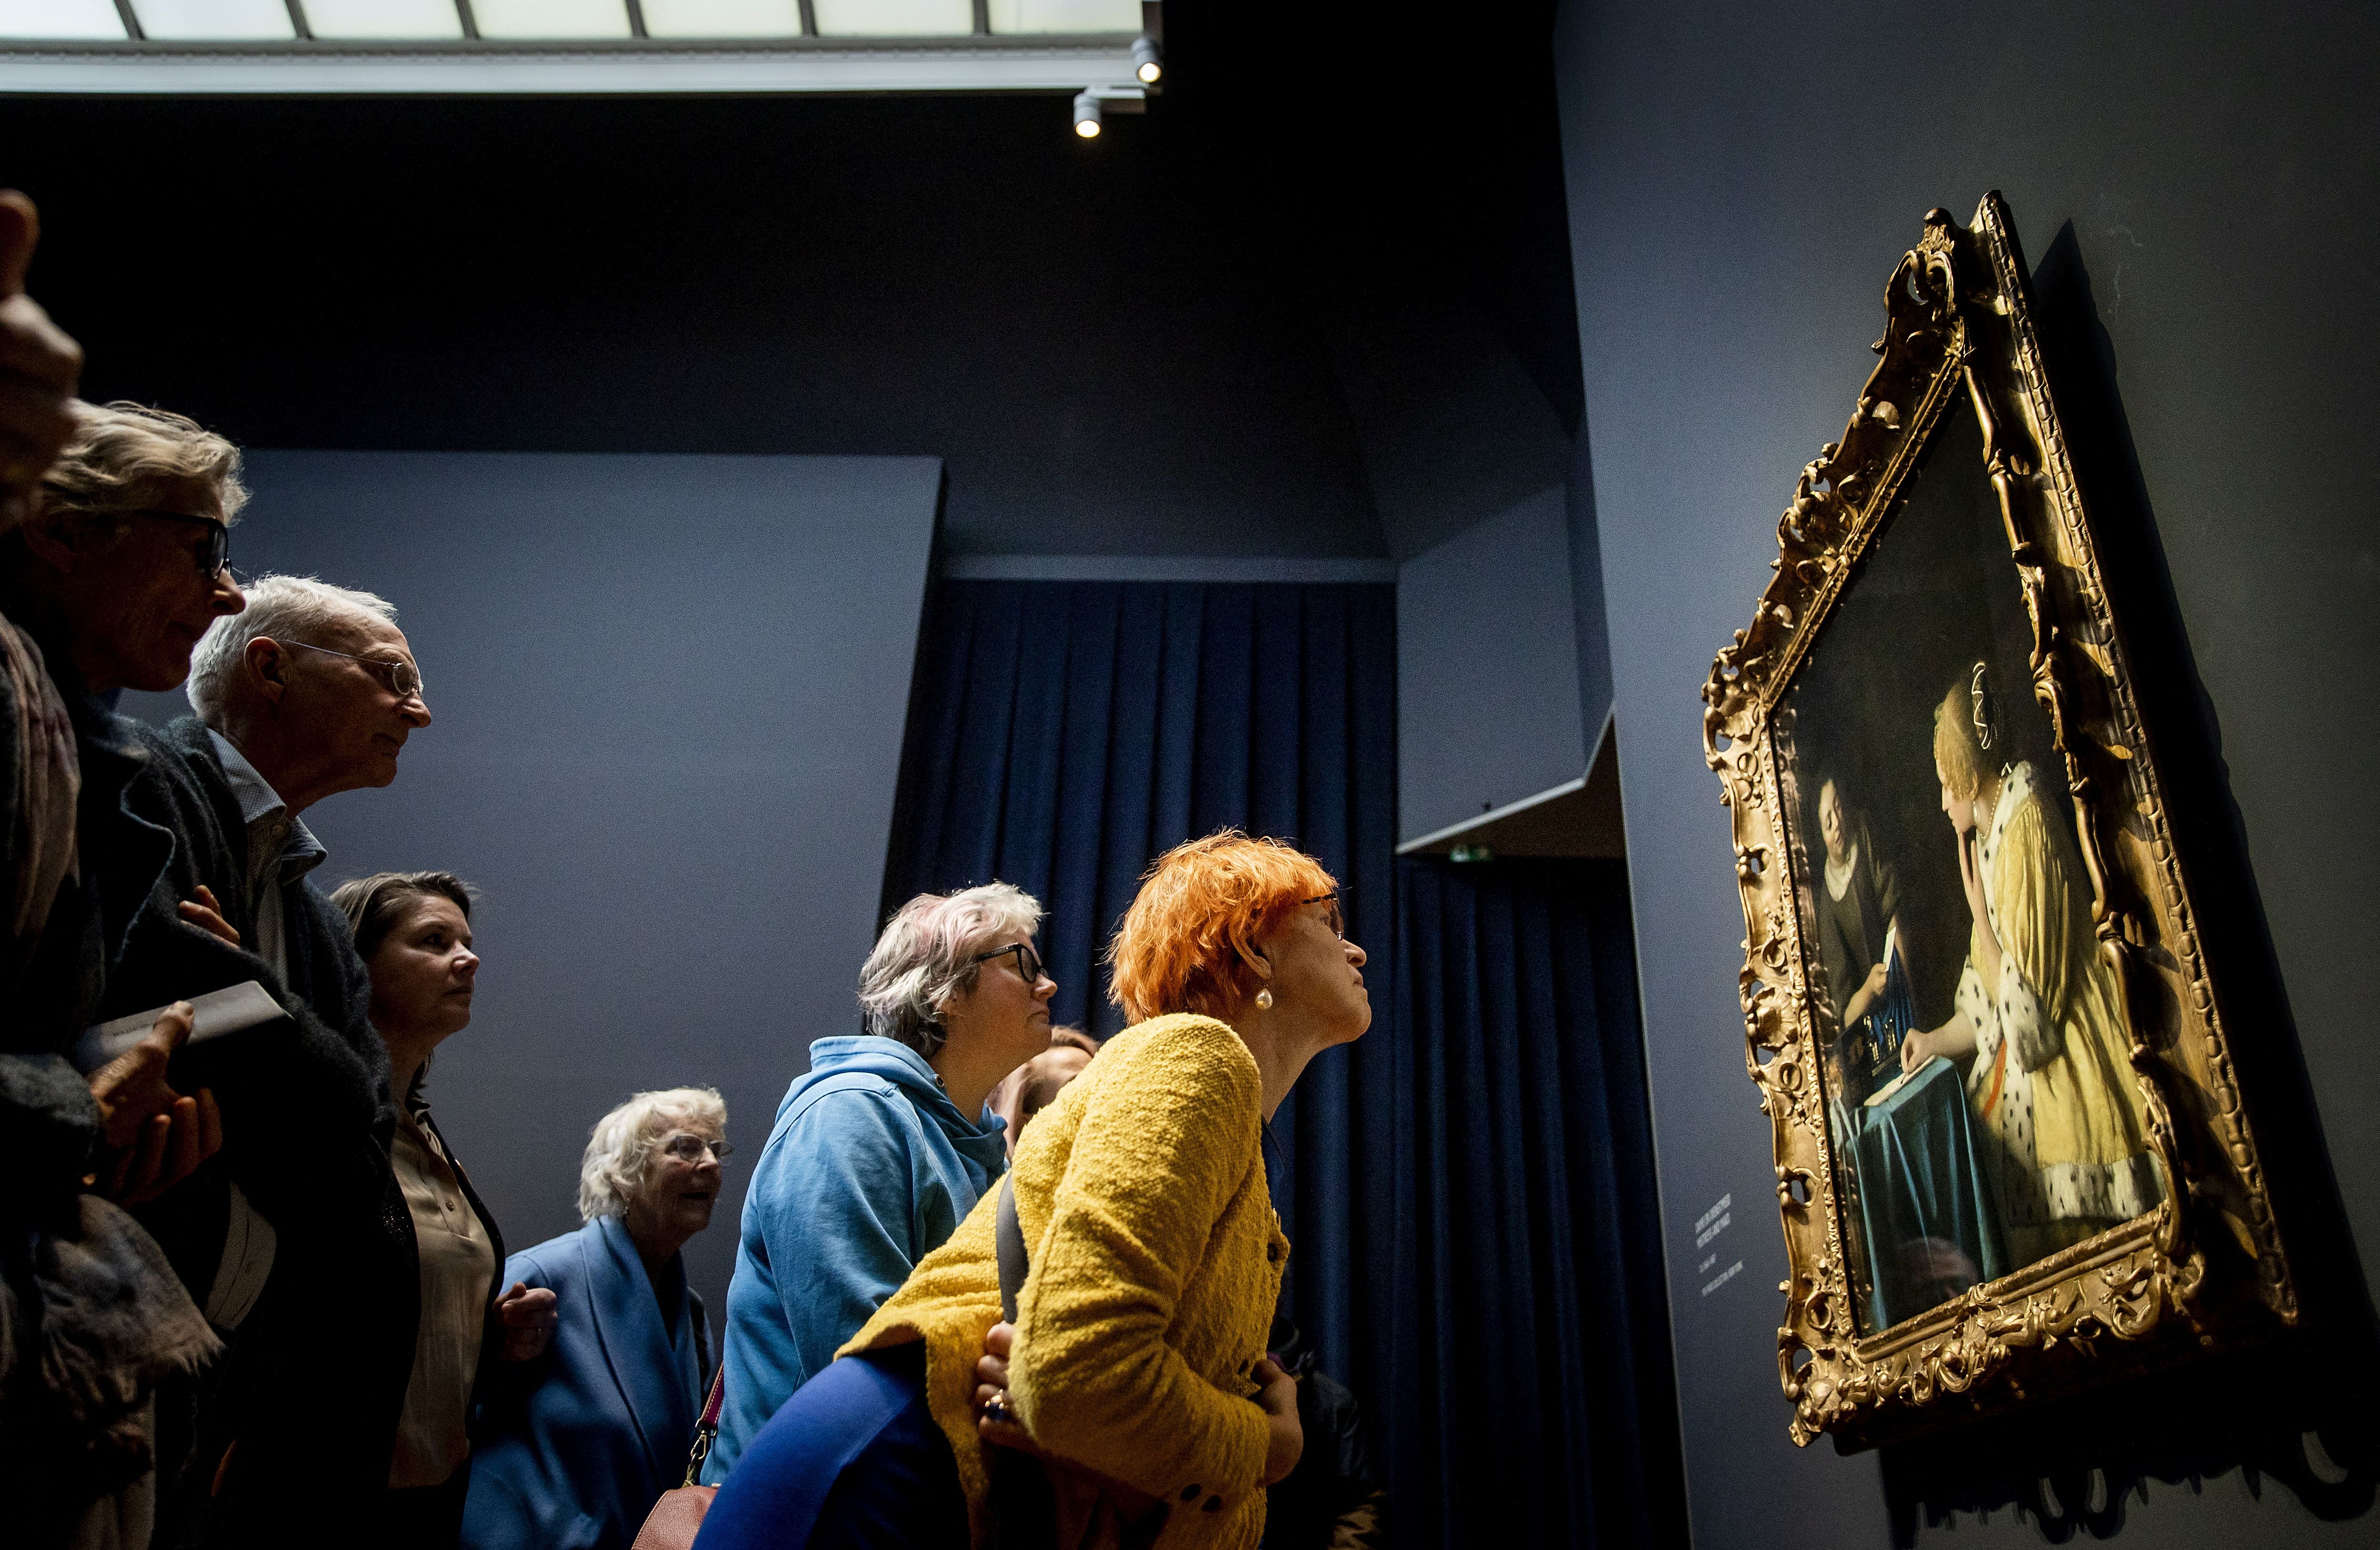 People look at a Vermeer painting on display in Amsterdam.